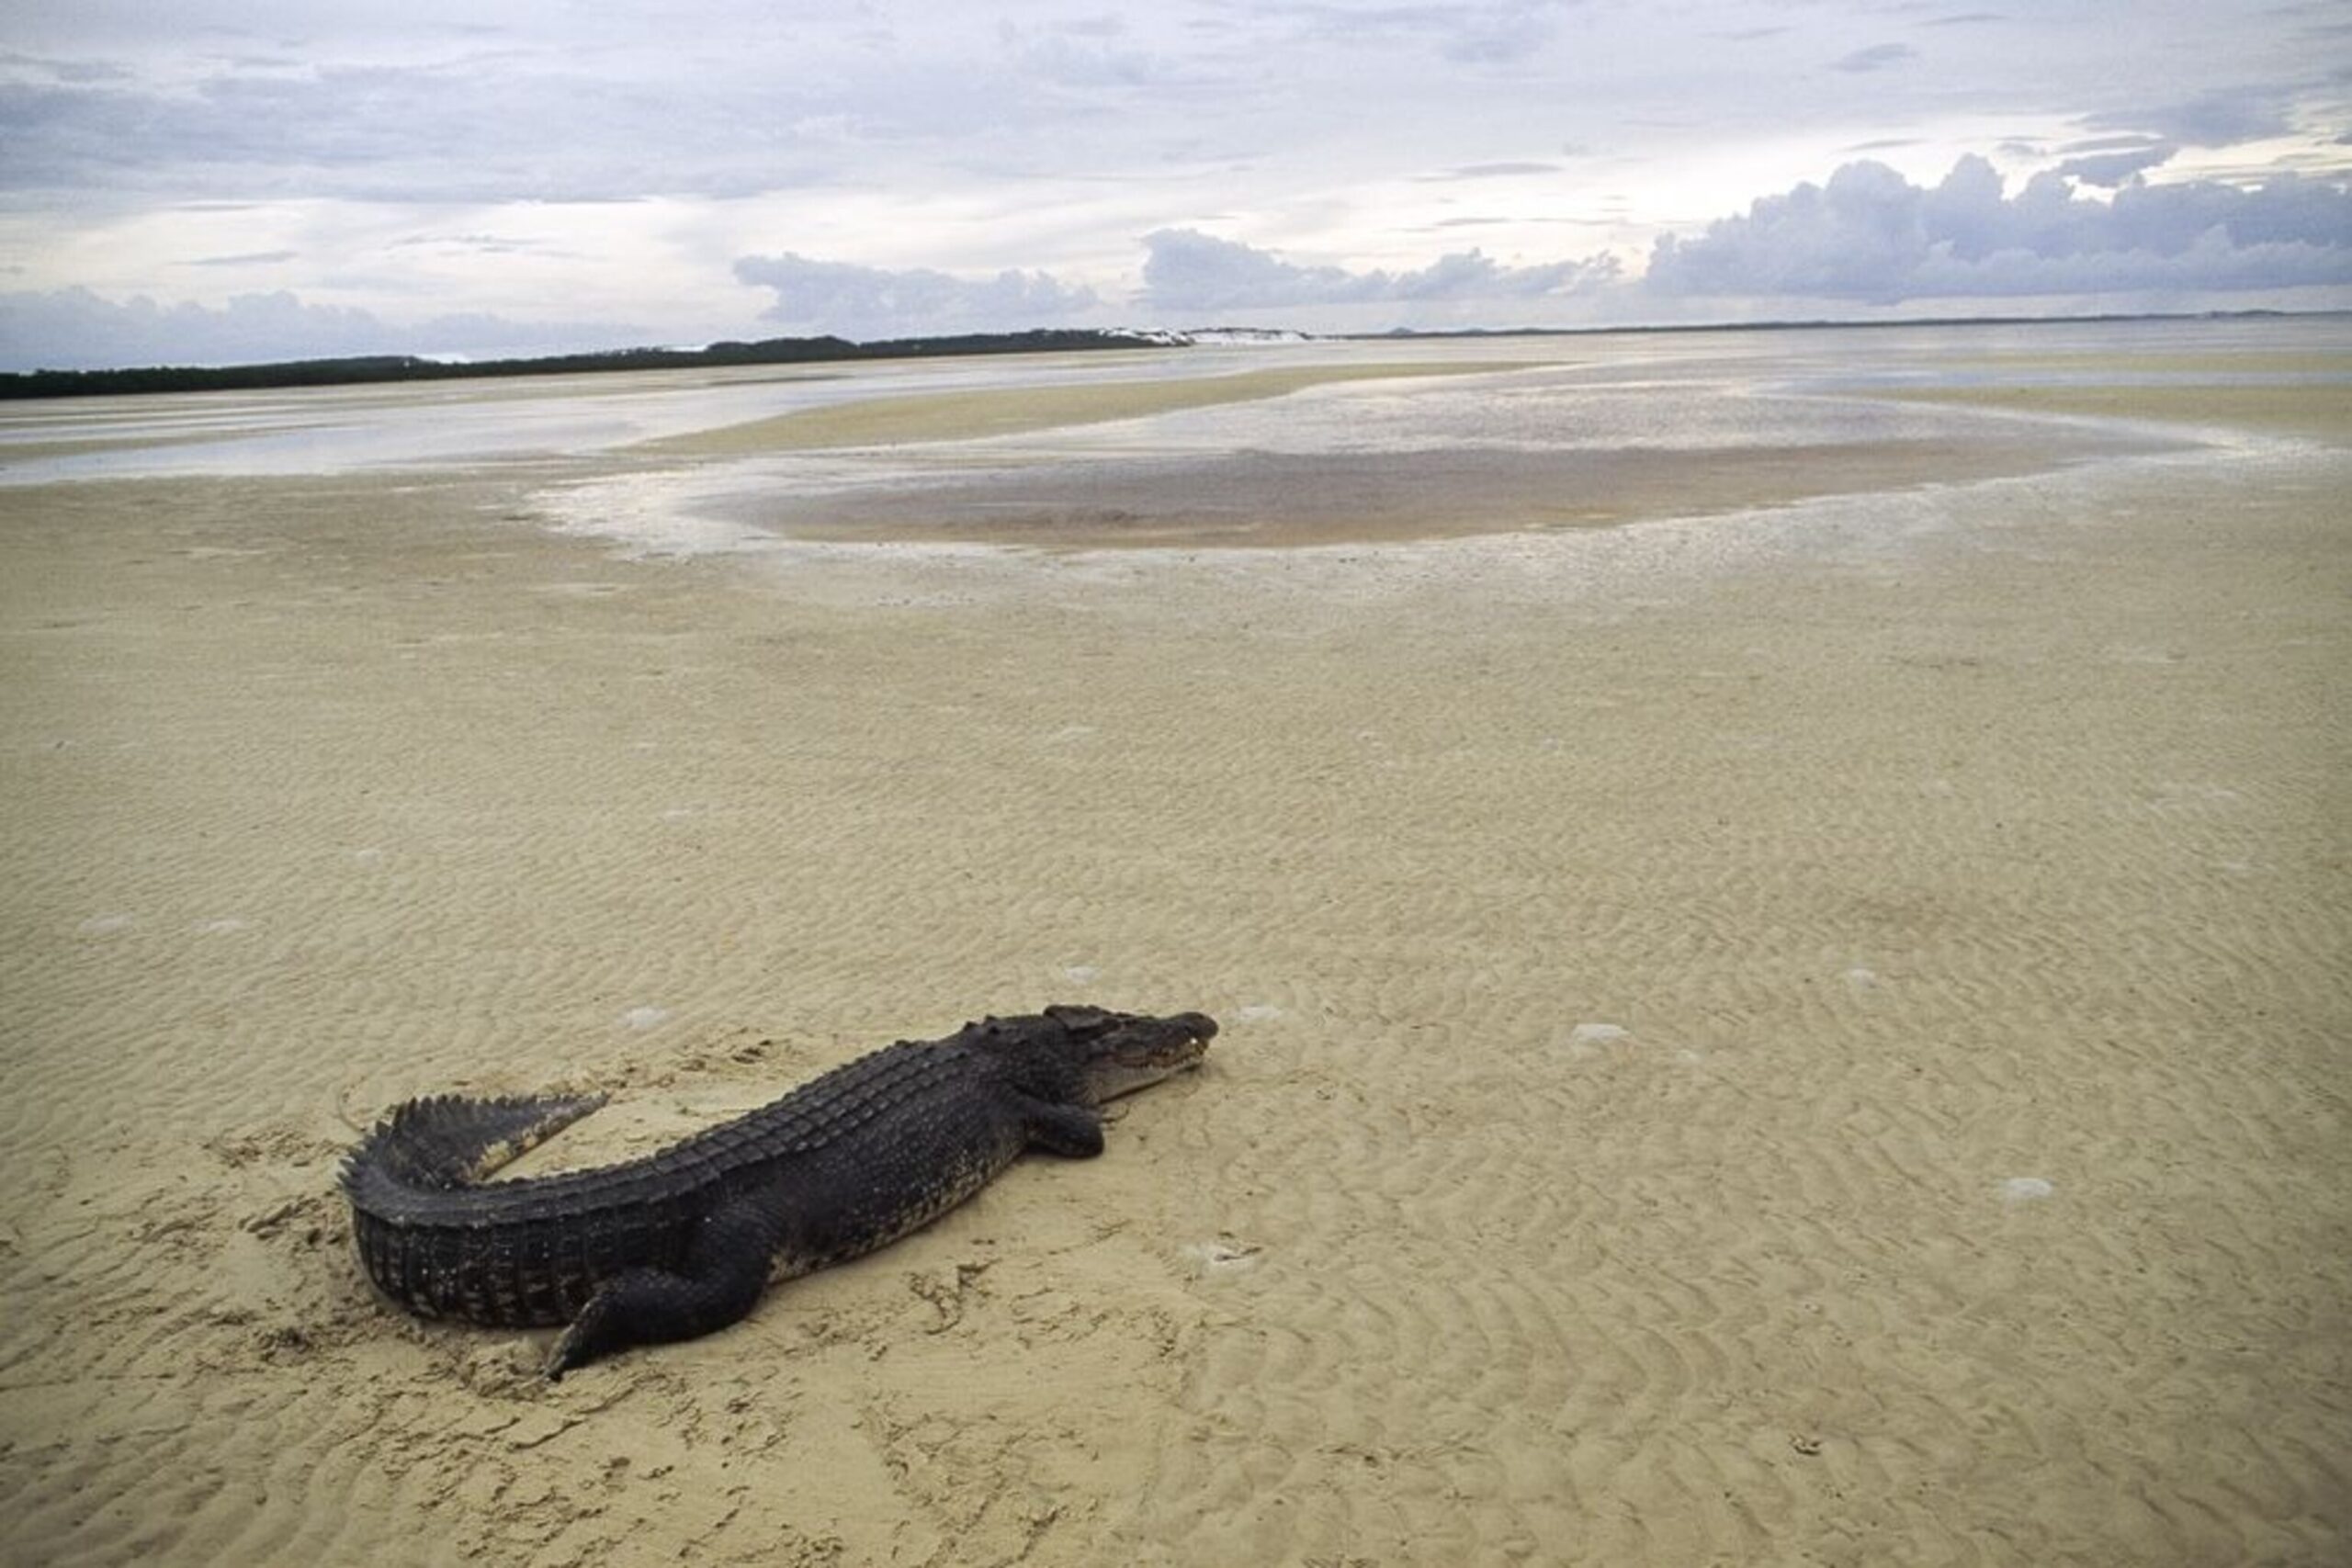 Are There Crocodiles in Fiji